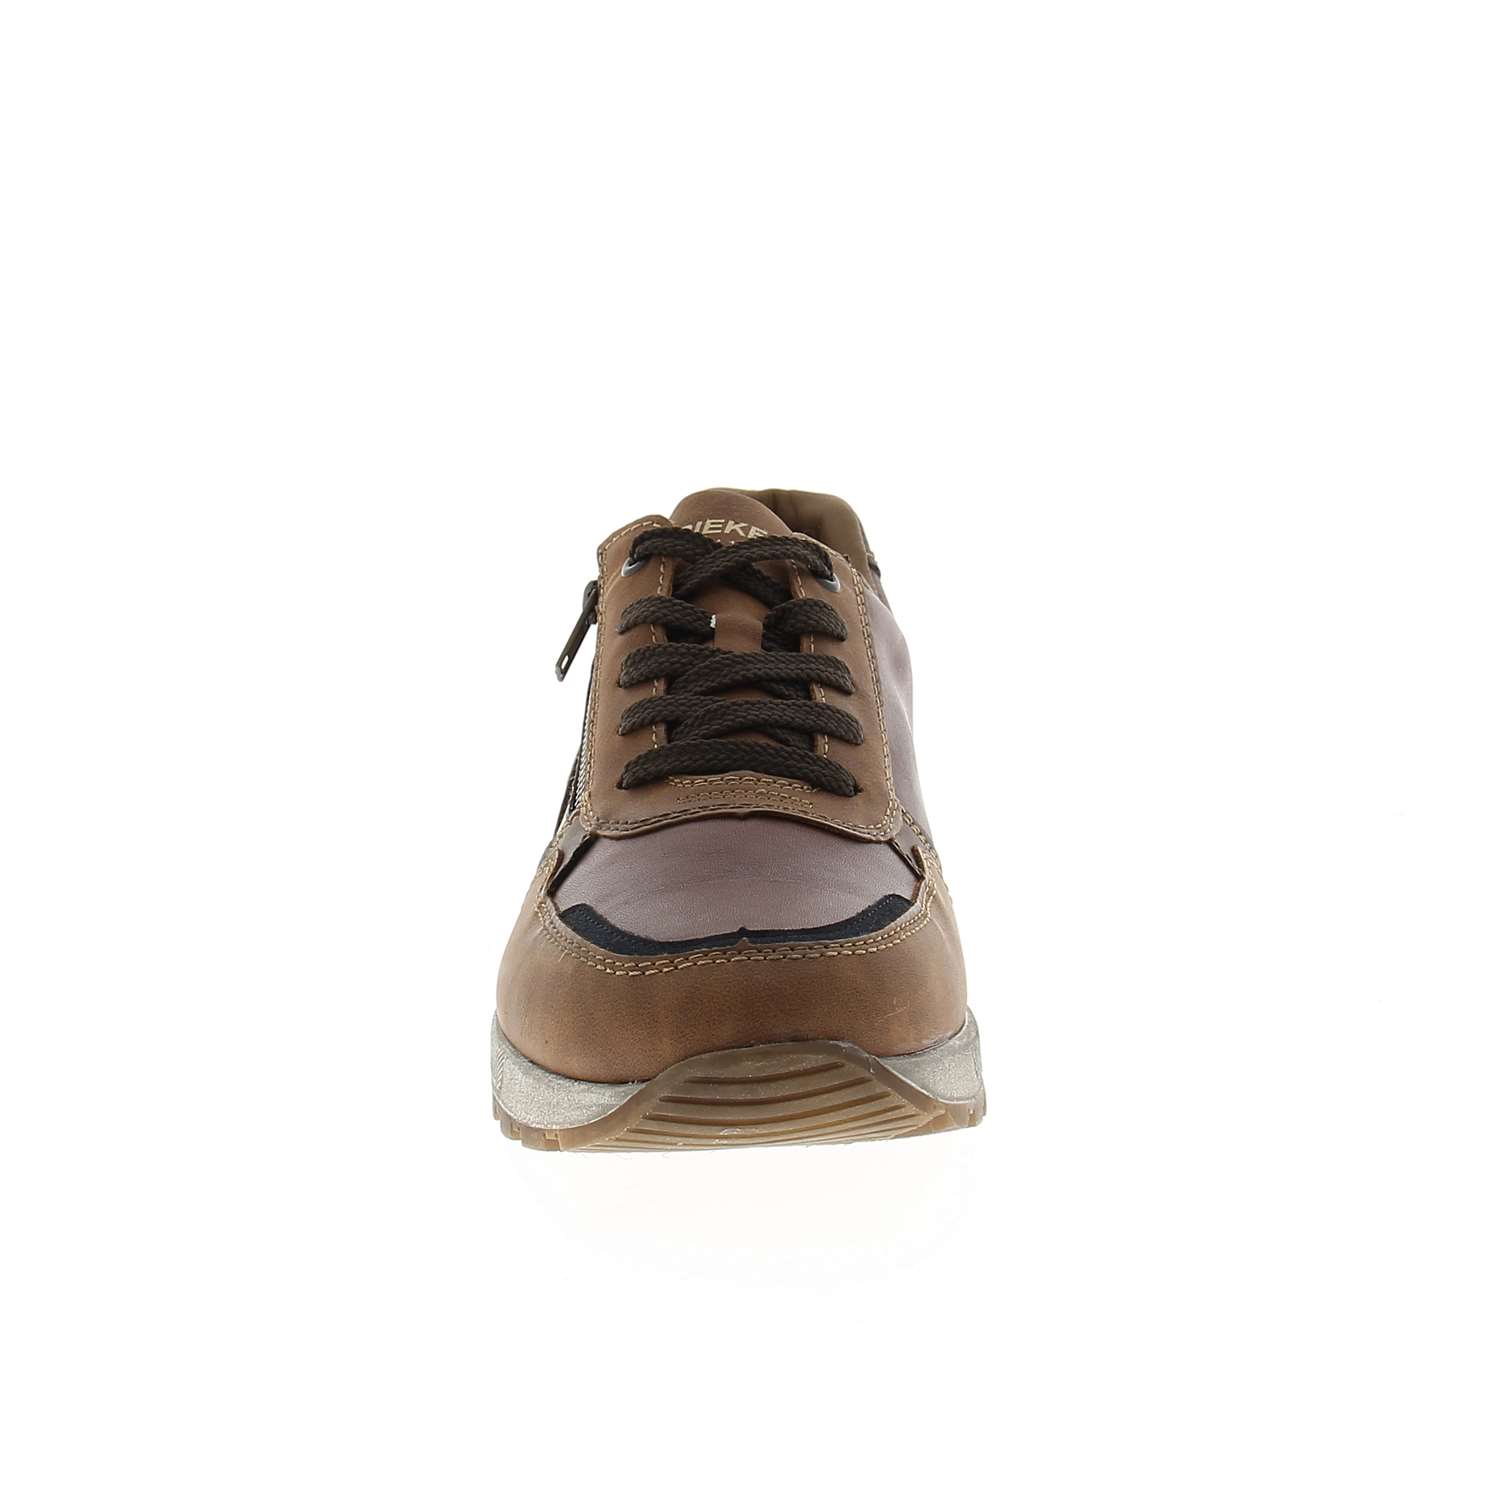 03 - RISURE - RIEKER - Chaussures à lacets - Cuir